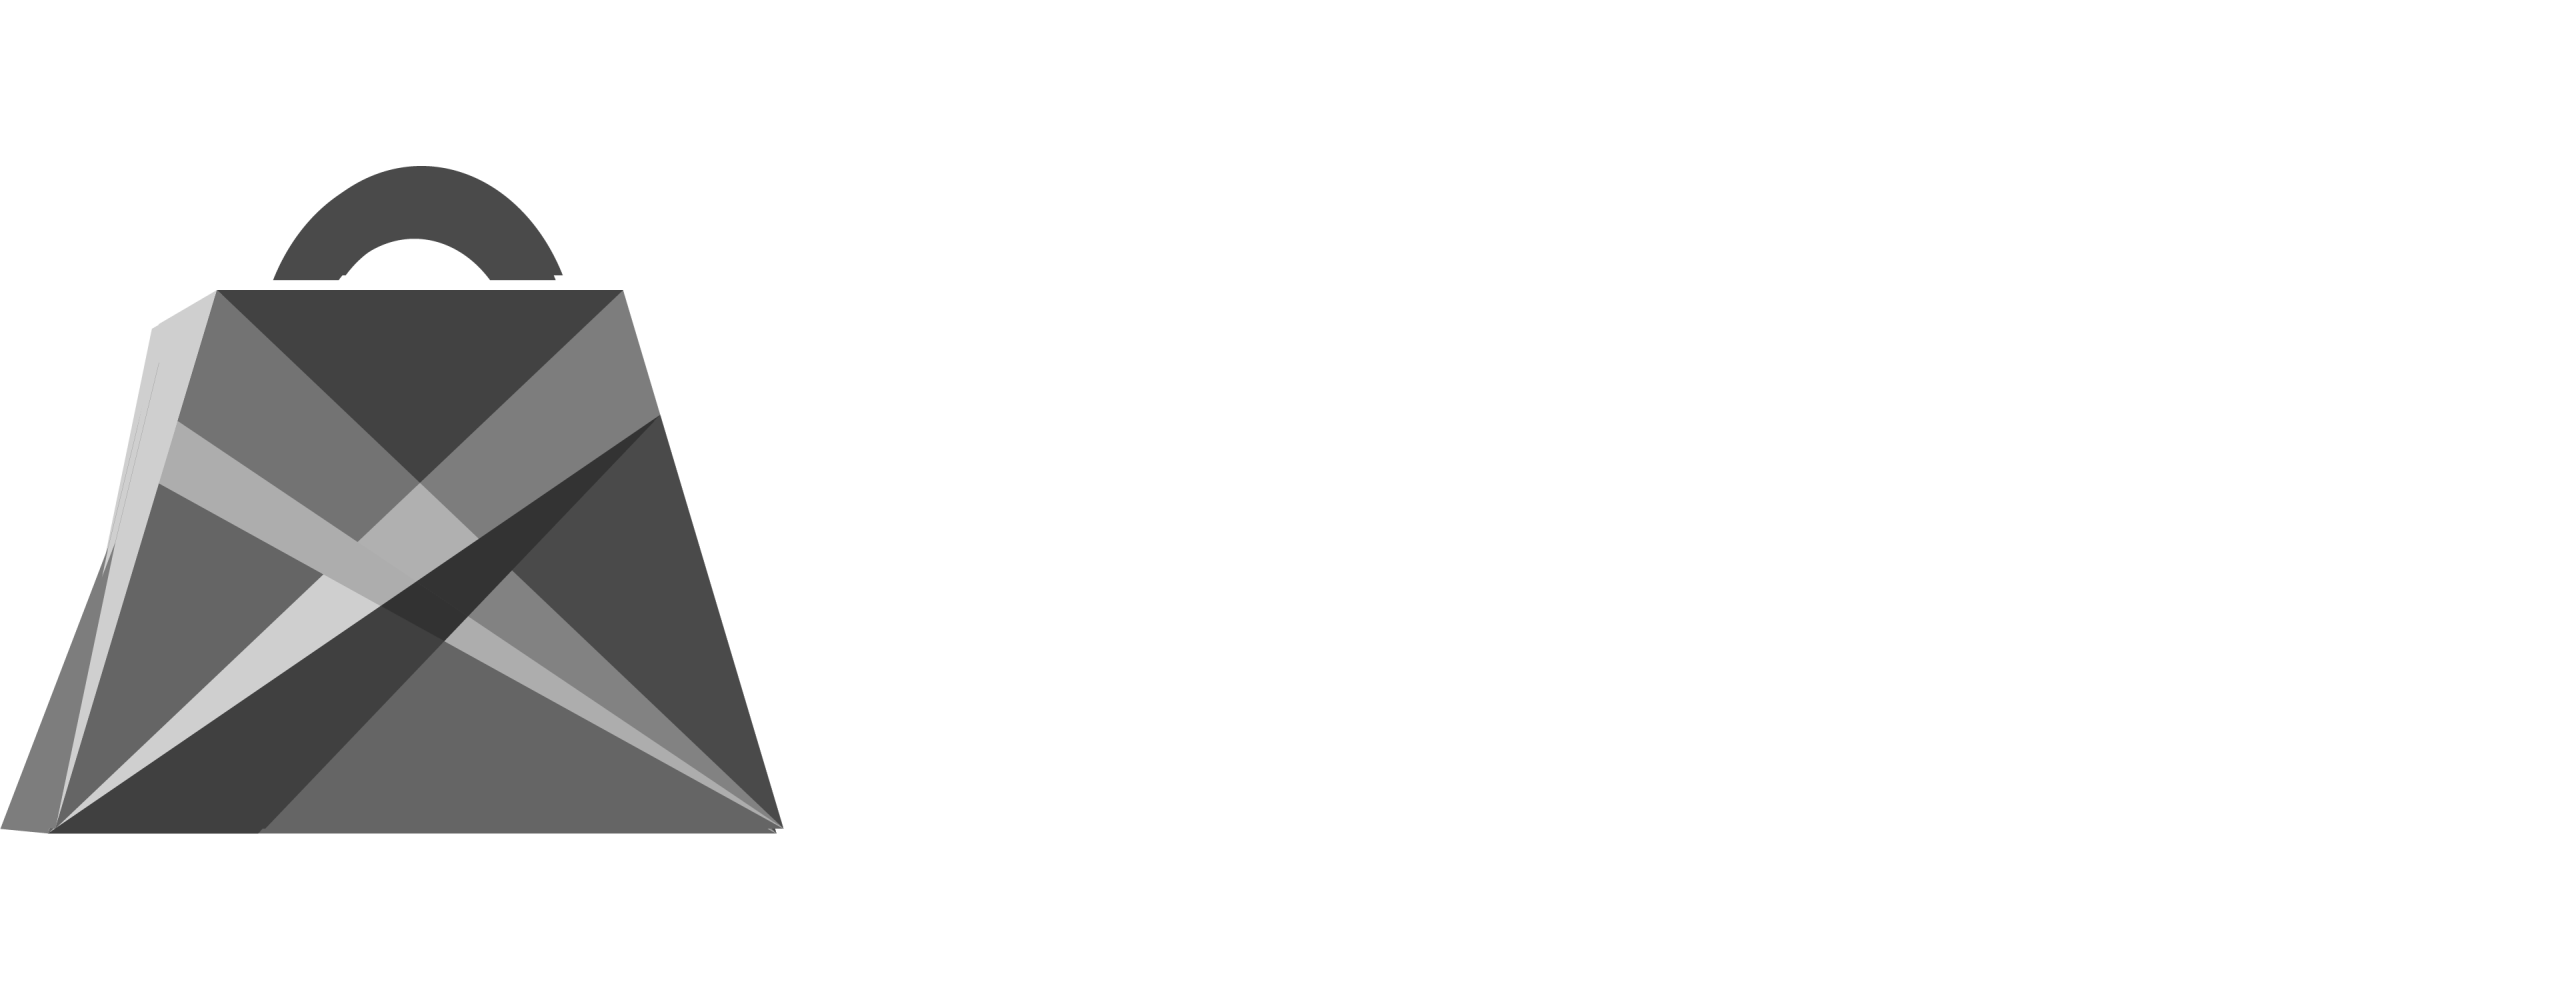 singlesdaydeals.ch